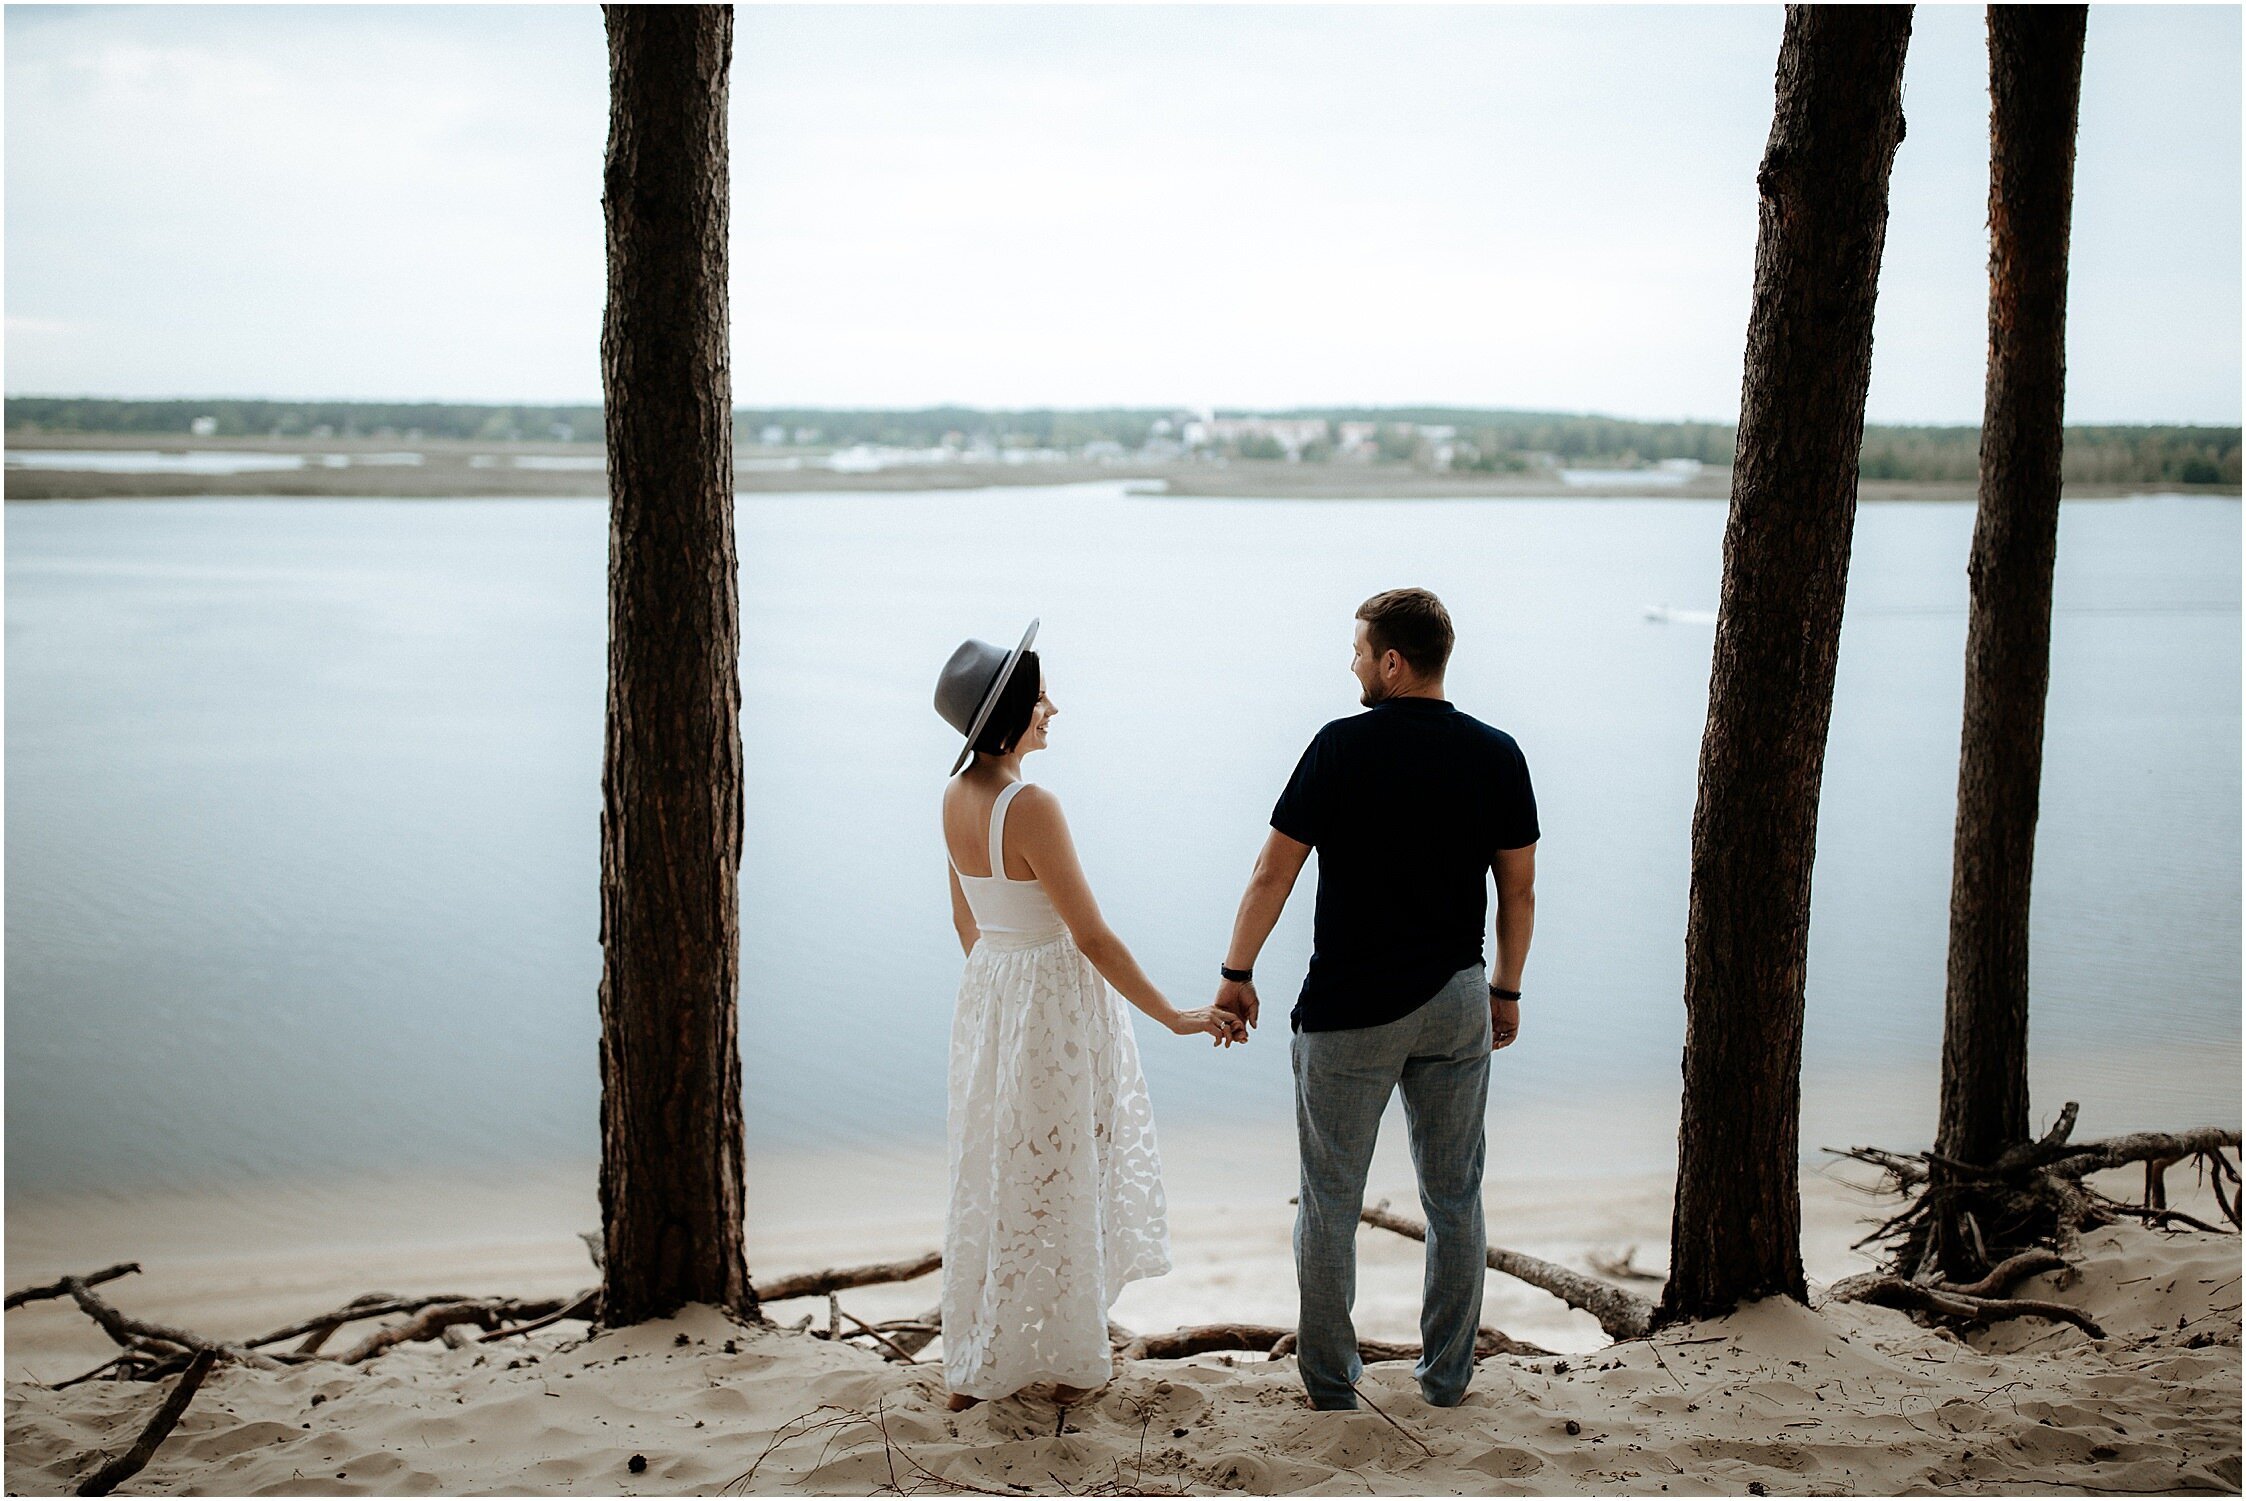 Zanda+Auckland+wedding+photographer+romantic+couple+portrait++white+sand+dunes+Europe+Latvia+New+Zealand_7.jpeg